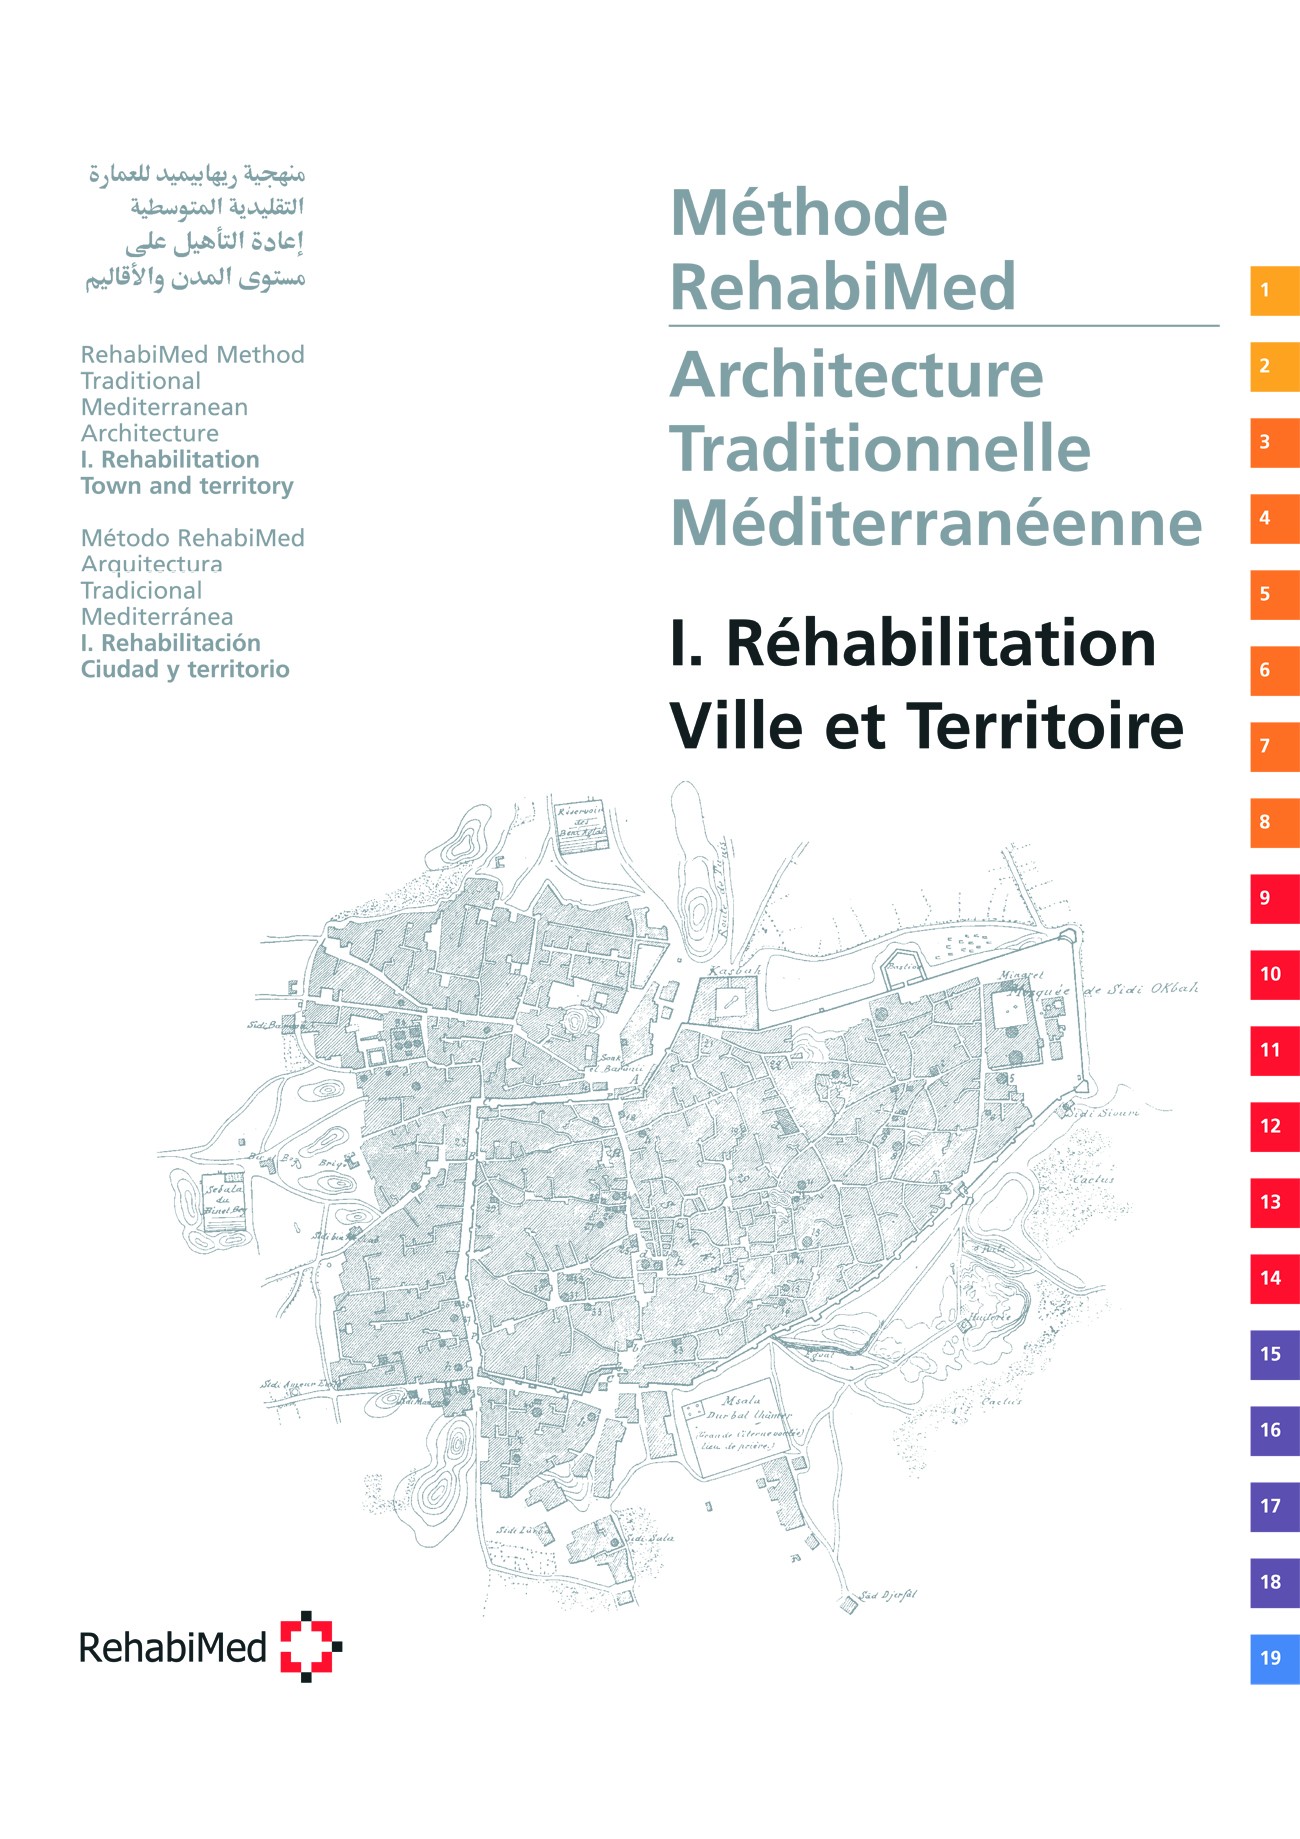 Mètode RehabiMed per a la rehabilitació de l’arquitectura tradicional mediterrània